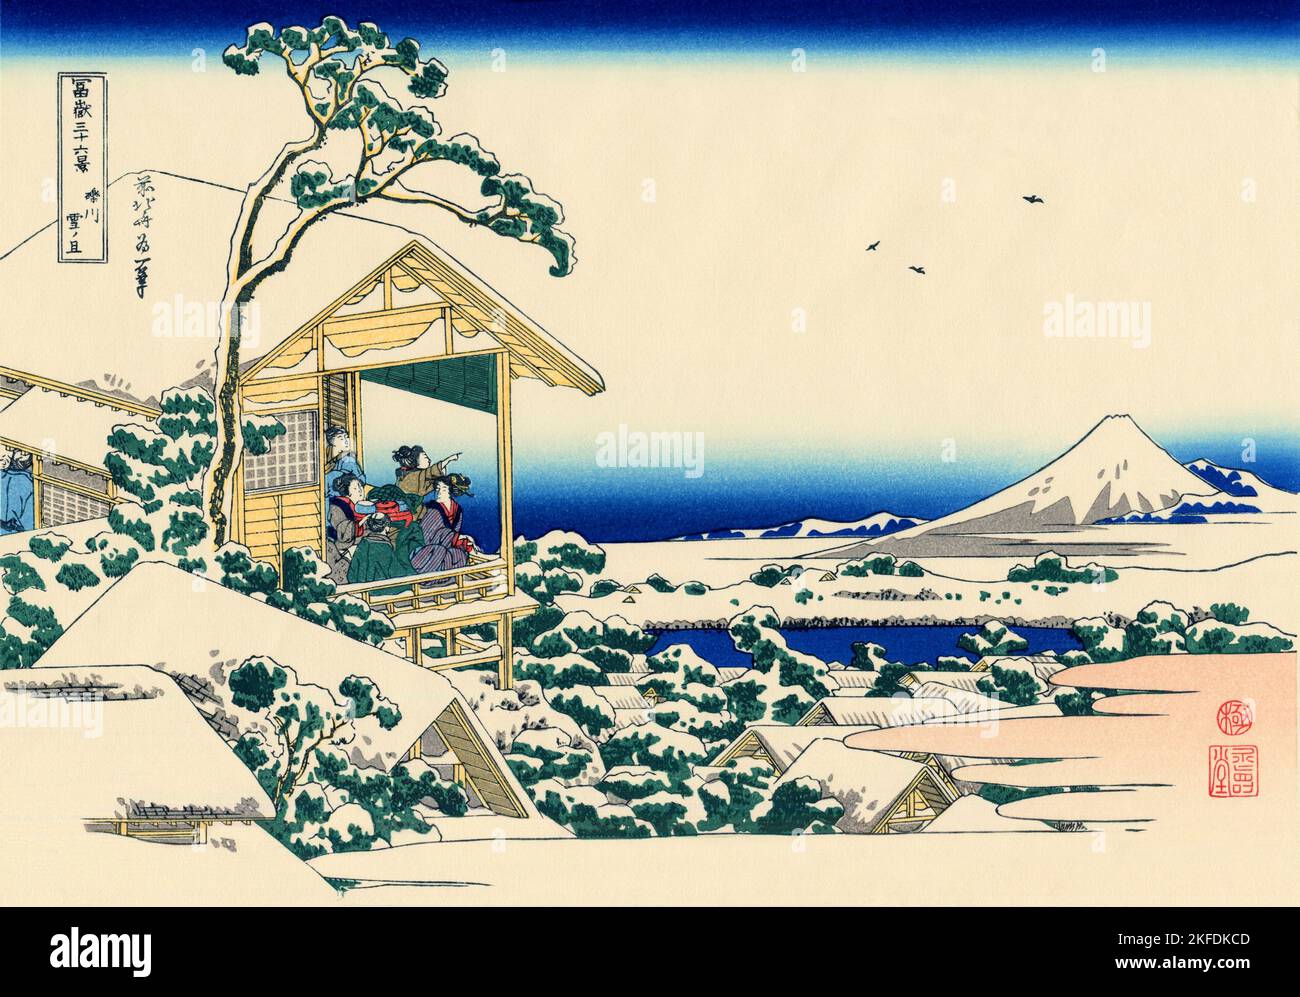 Giappone: “Koishikawa al mattino dopo una nevicata”. Ukiyo-e stampa in blocco della serie «trentasei viste del Monte Fuji» di Katsushika Hokusai (31 ottobre 1760 - 10 maggio 1849), 1830. “trentasei viste del Monte Fuji” è una serie di stampe in legno realizzate dall’artista giapponese Katsushika Hokusai. La serie raffigura il Monte Fuji in stagioni e condizioni meteorologiche diverse da una varietà di luoghi e distanze. Si compone di 46 stampe create tra il 1826 e il 1833. I primi 36 furono inclusi nella pubblicazione originale e, a causa della loro popolarità, ne furono aggiunti altri 10. Foto Stock